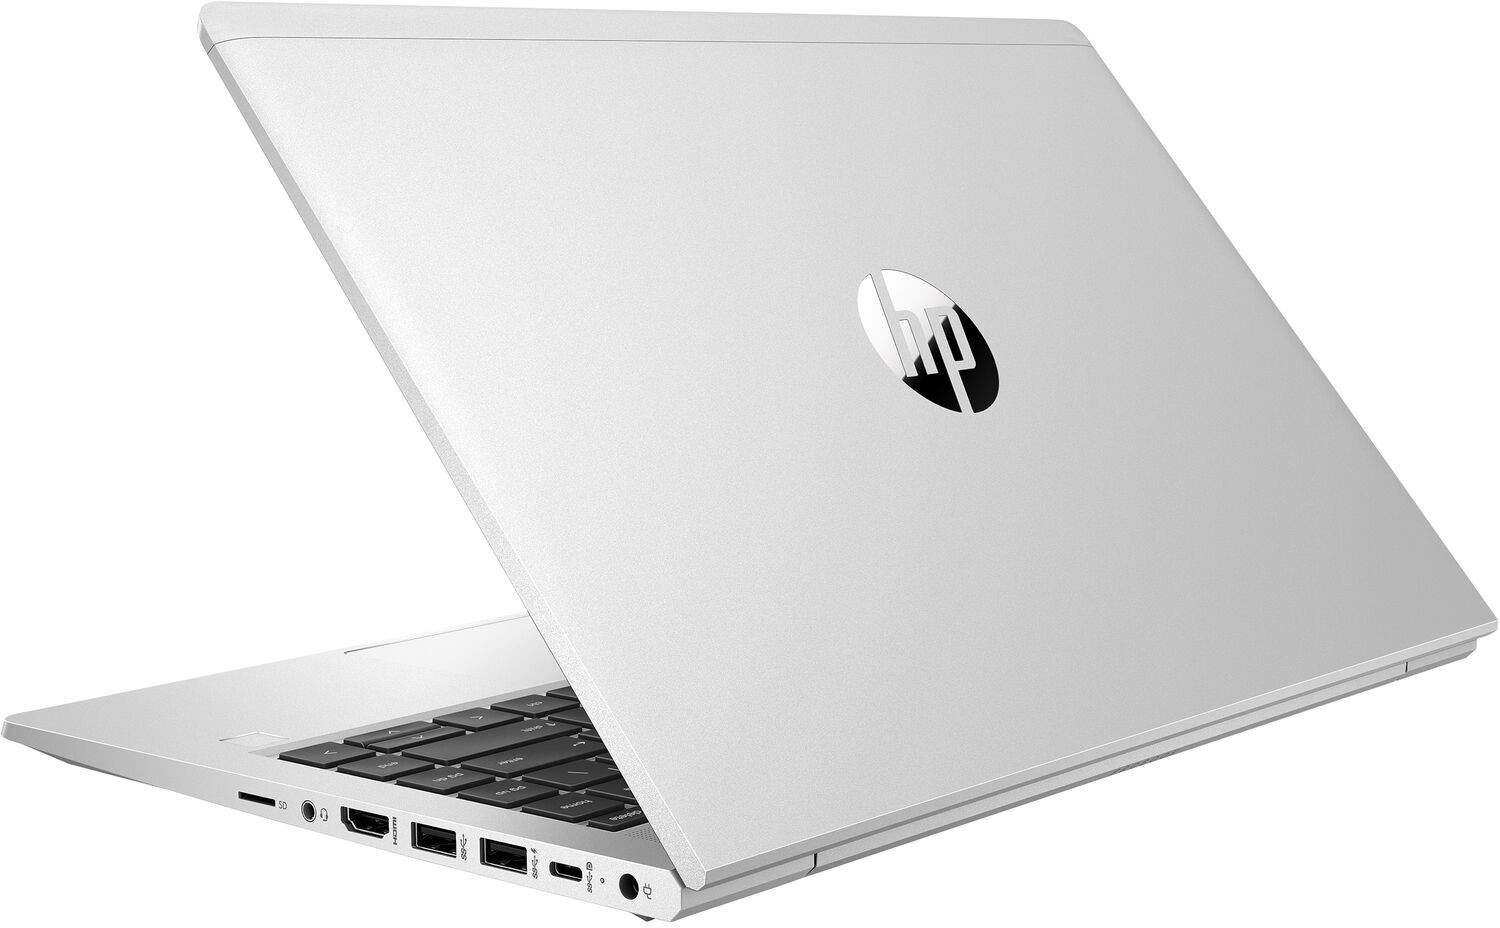 Ноутбук HP ProBook 440 G8 Core i7-1165G7 2.8GHz,14" FHD (1920x1080) AG,8Gb DDR4(1),256Gb SSD,45Wh LL,Clickpad Backlit ,FPR,1.6kg,1y,Silver,DOS-39334